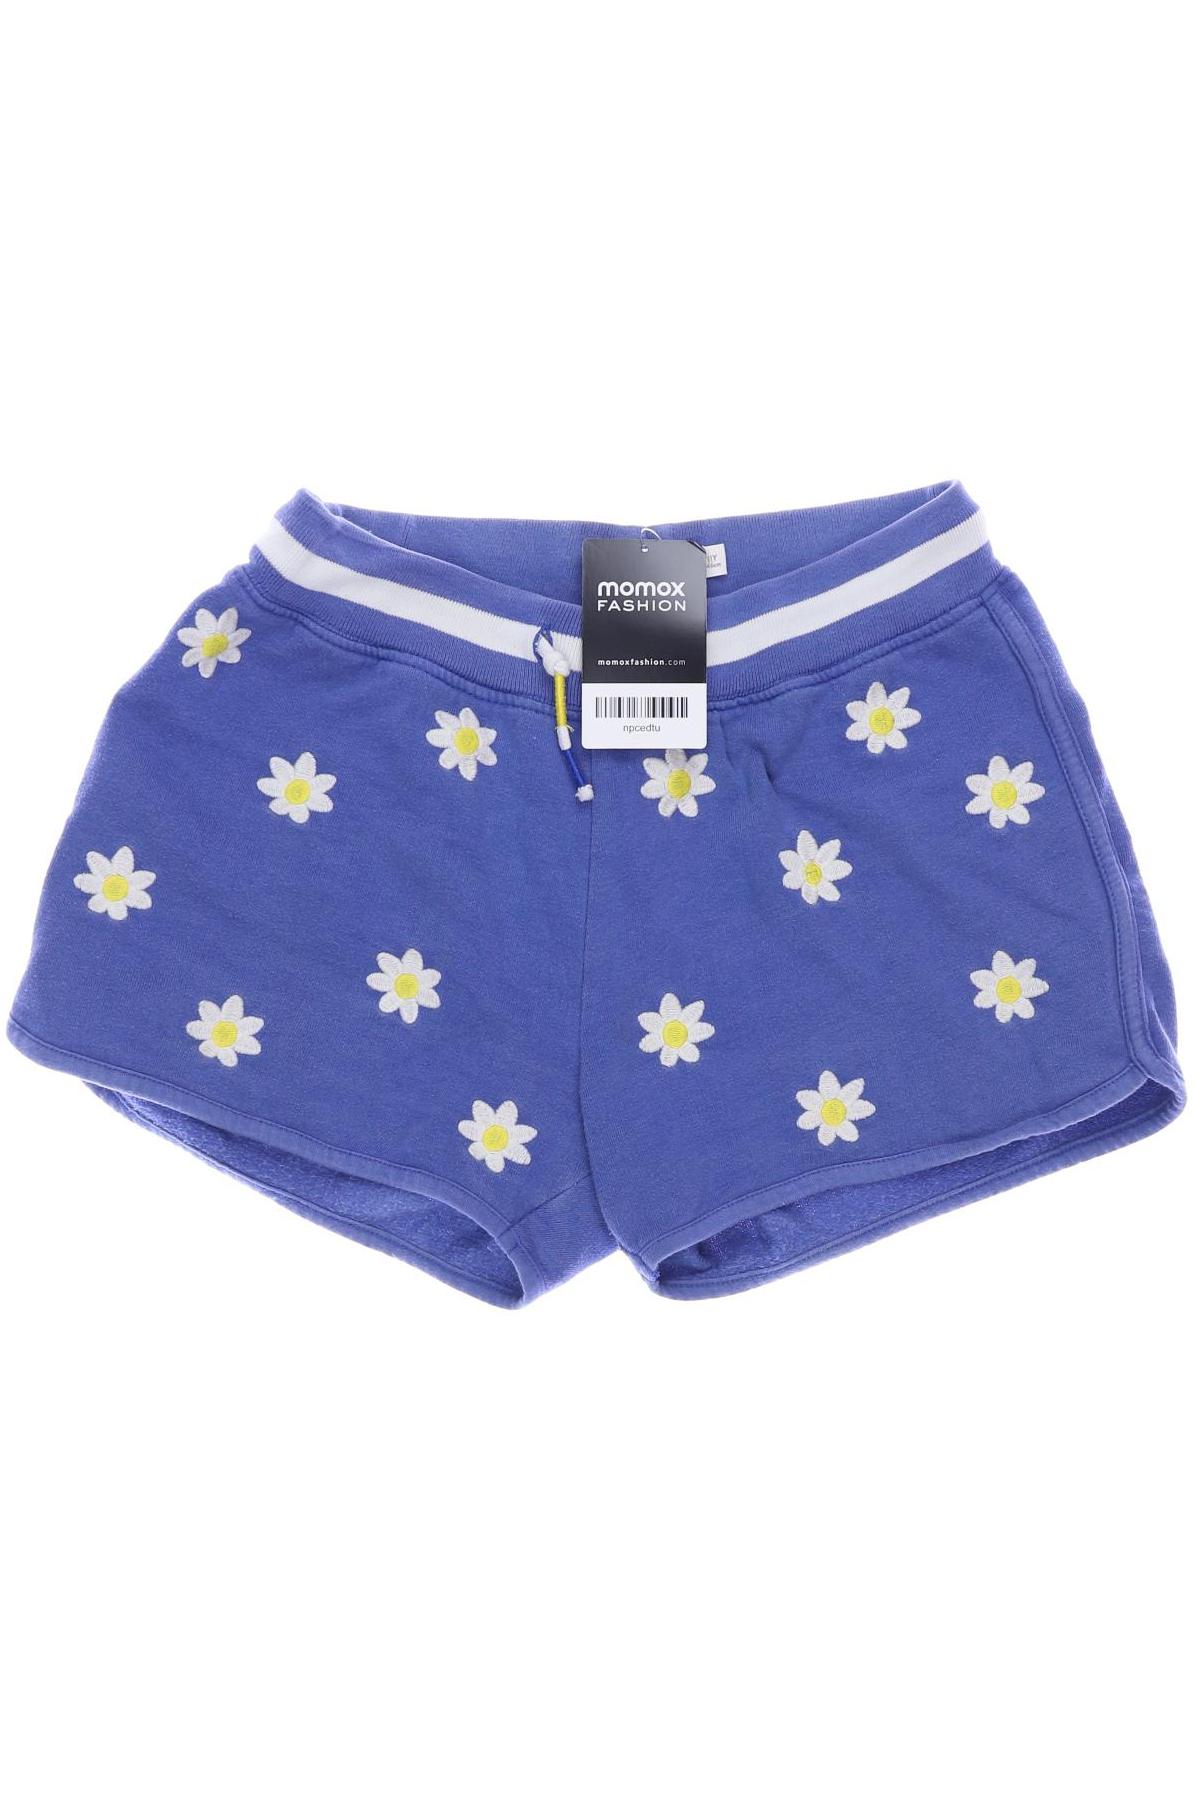 Mini Boden Damen Shorts, blau, Gr. 146 von Mini Boden